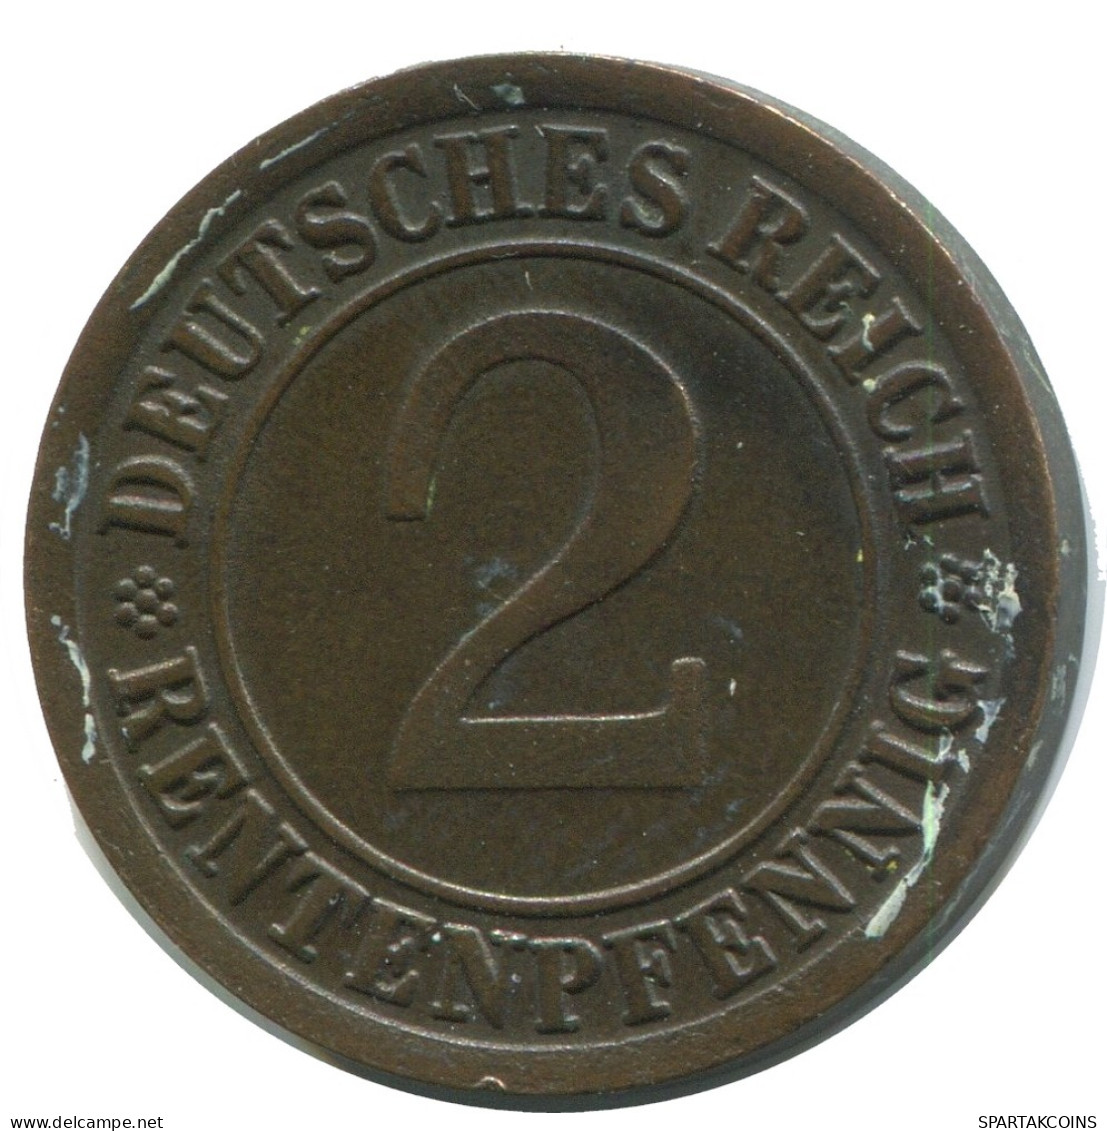 2 RENTENPFENNIG 1924 J GERMANY Coin #AD463.9.U - 2 Renten- & 2 Reichspfennig